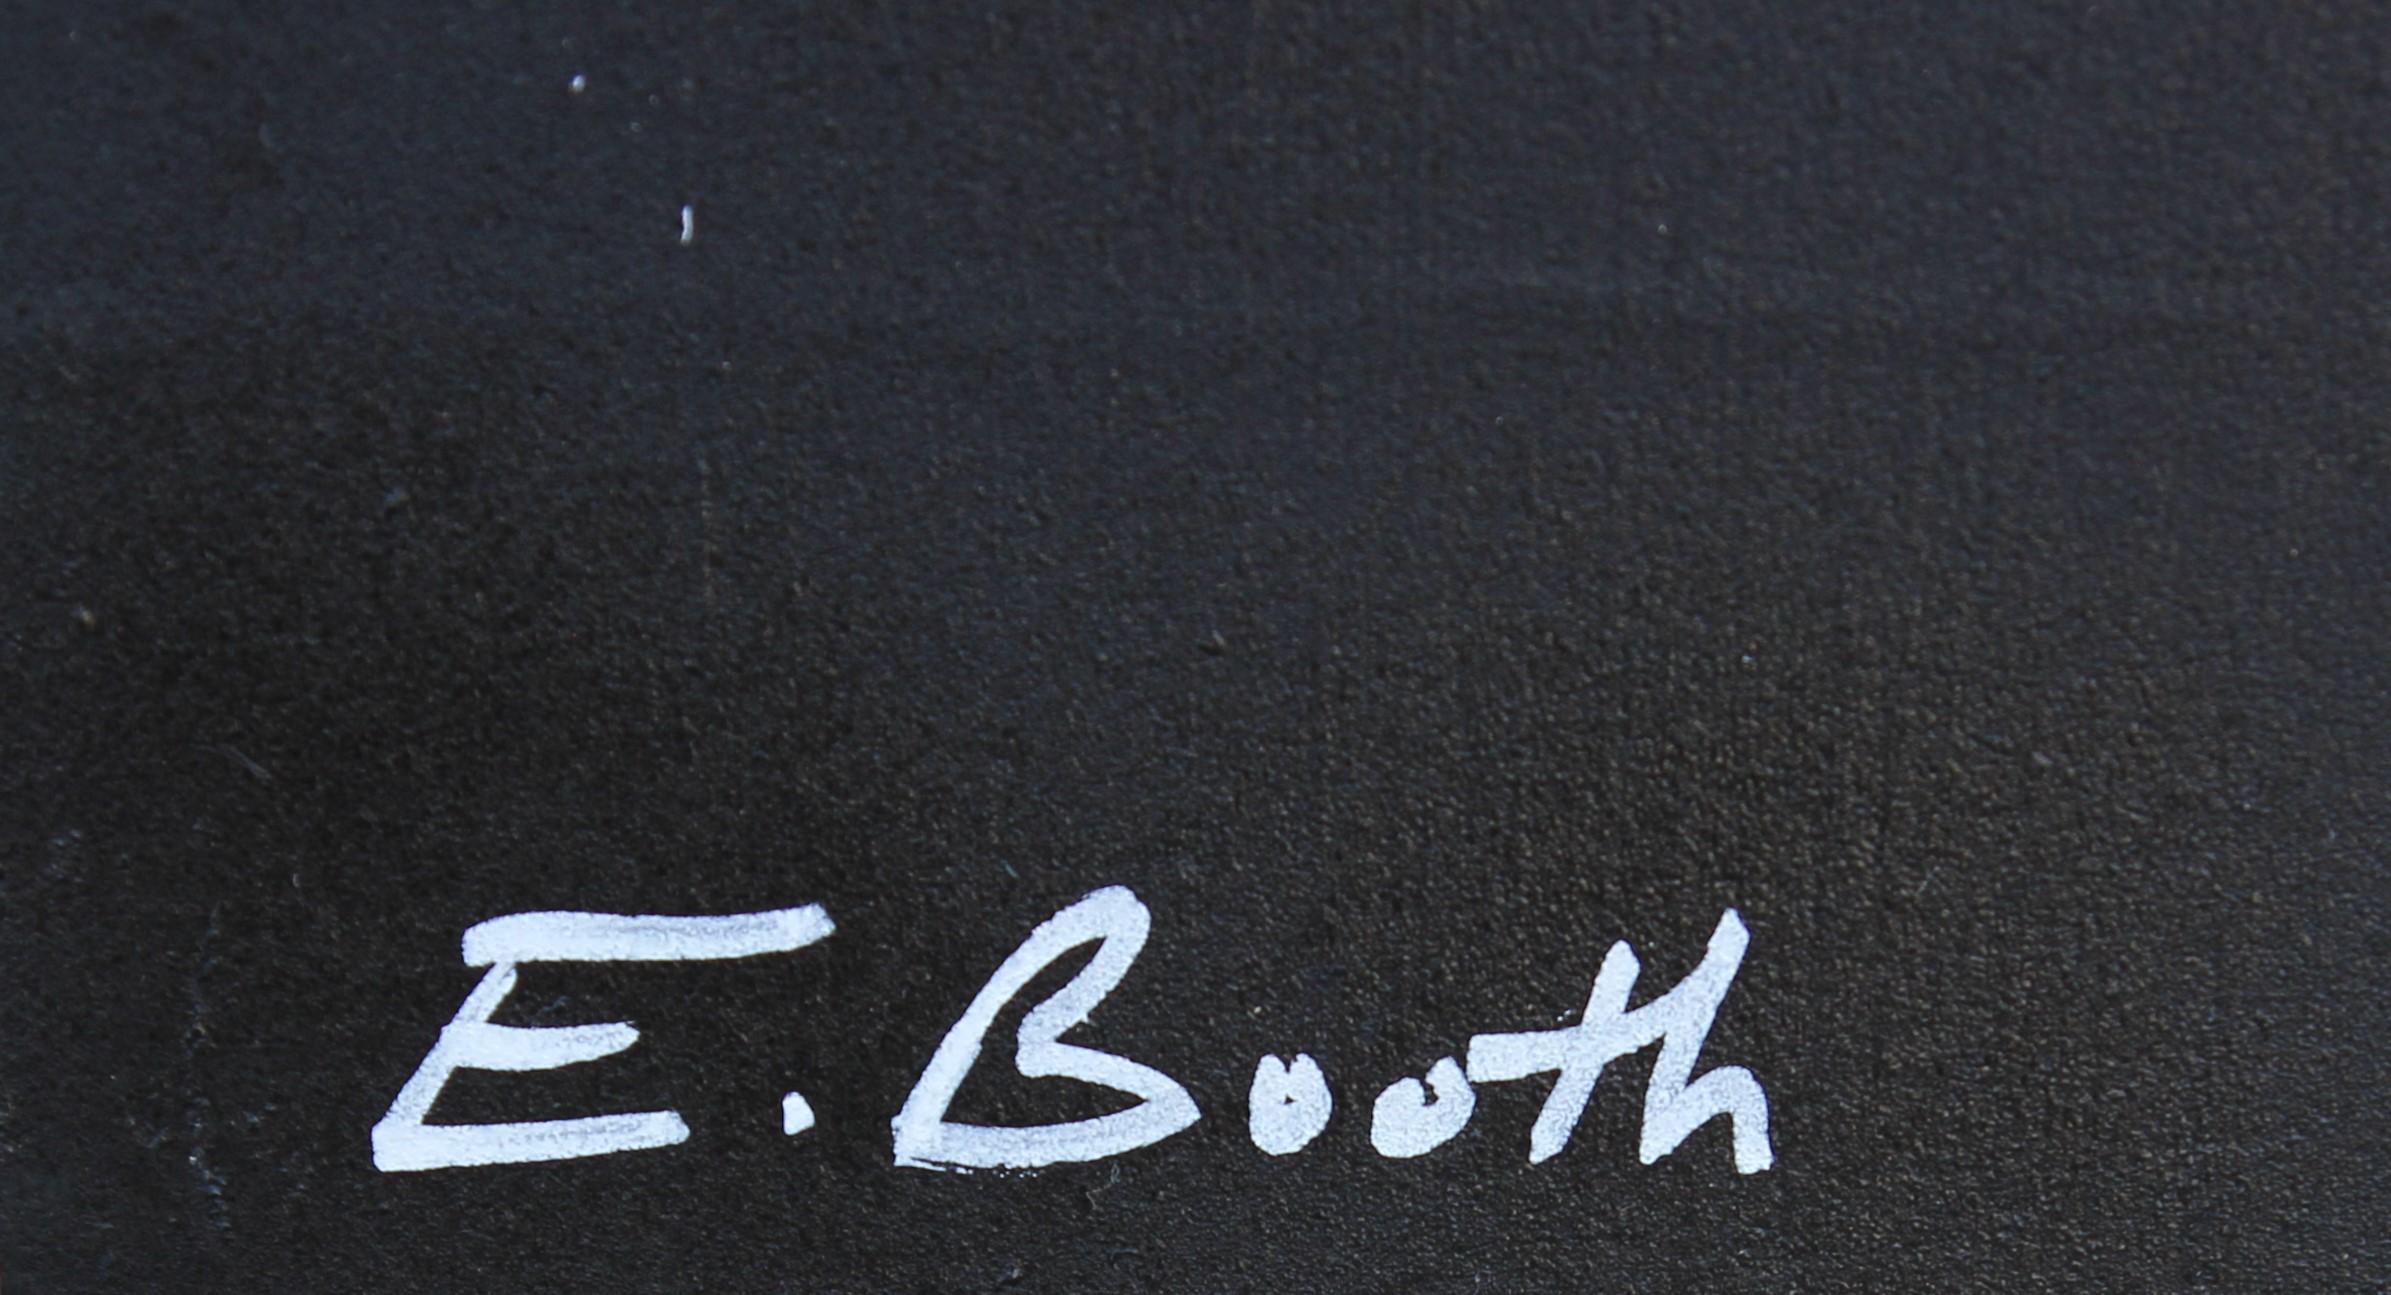 Peinture contemporaine abstraite du chanteur de Radiohead, Thom Yorke, réalisée par l'artiste Ed Booth d'Austin, au Texas. Grand tableau portrait vectorisé noir et gris de Yorke dans un fond brossé sarcelle et rouge. Signé par l'artiste en bas à